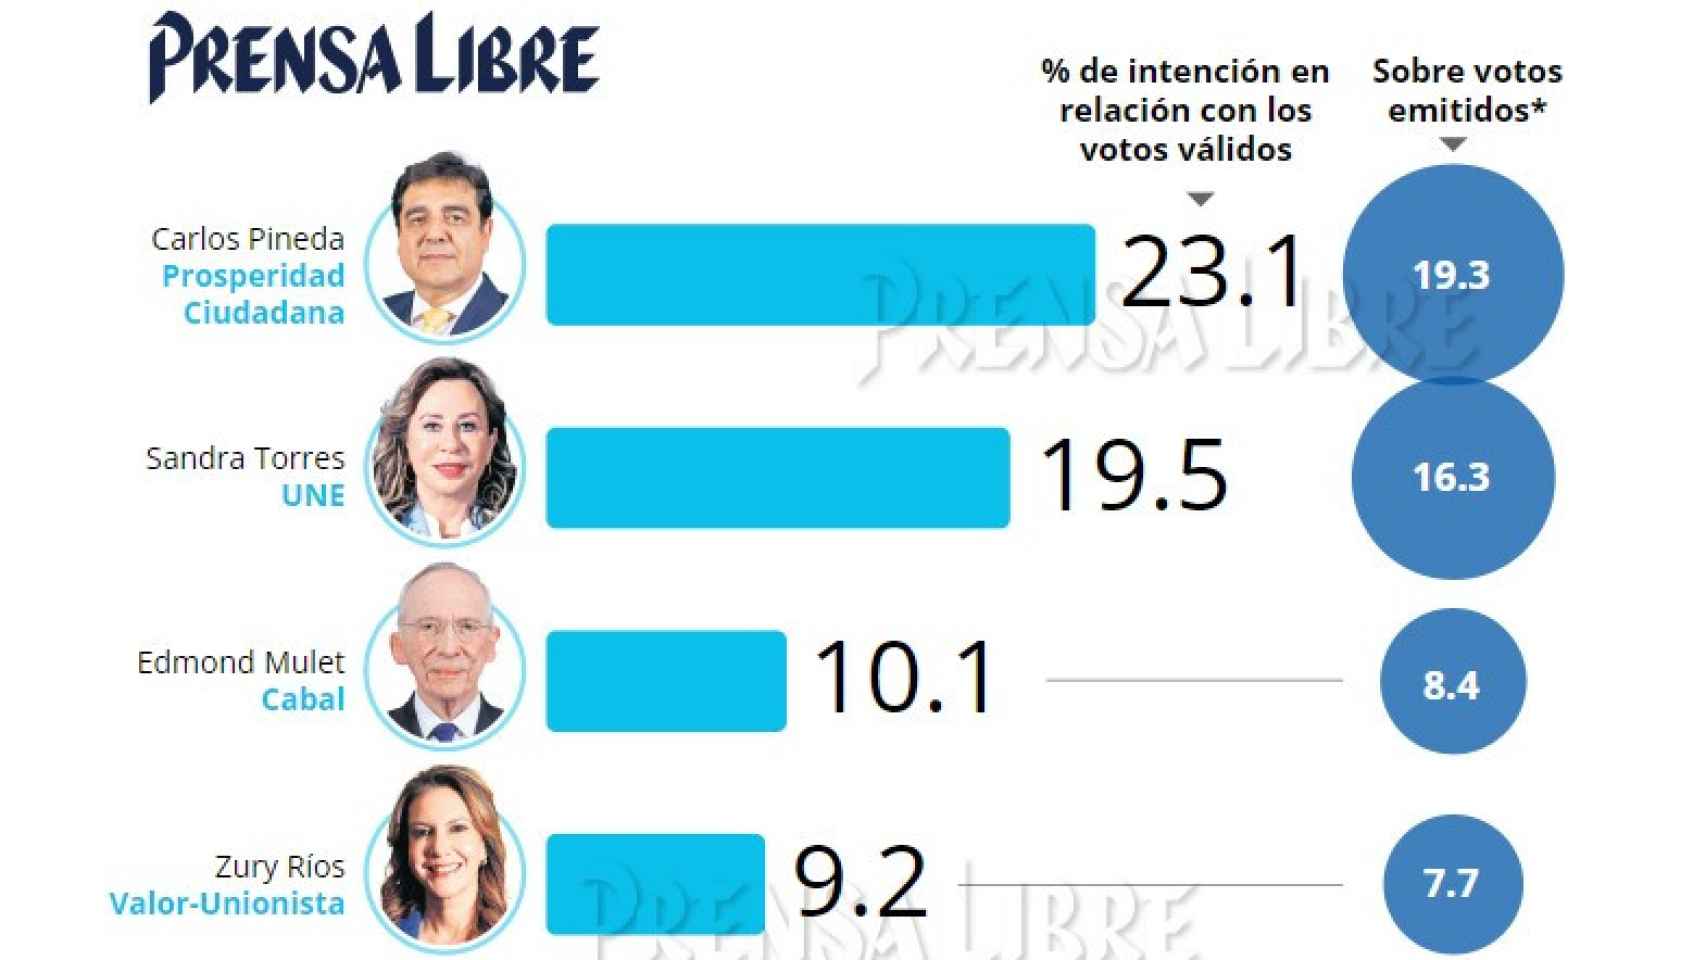 La encuesta electoral del diario Prensa Libre el pasado abril, antes de que Pineda quedara excluido.